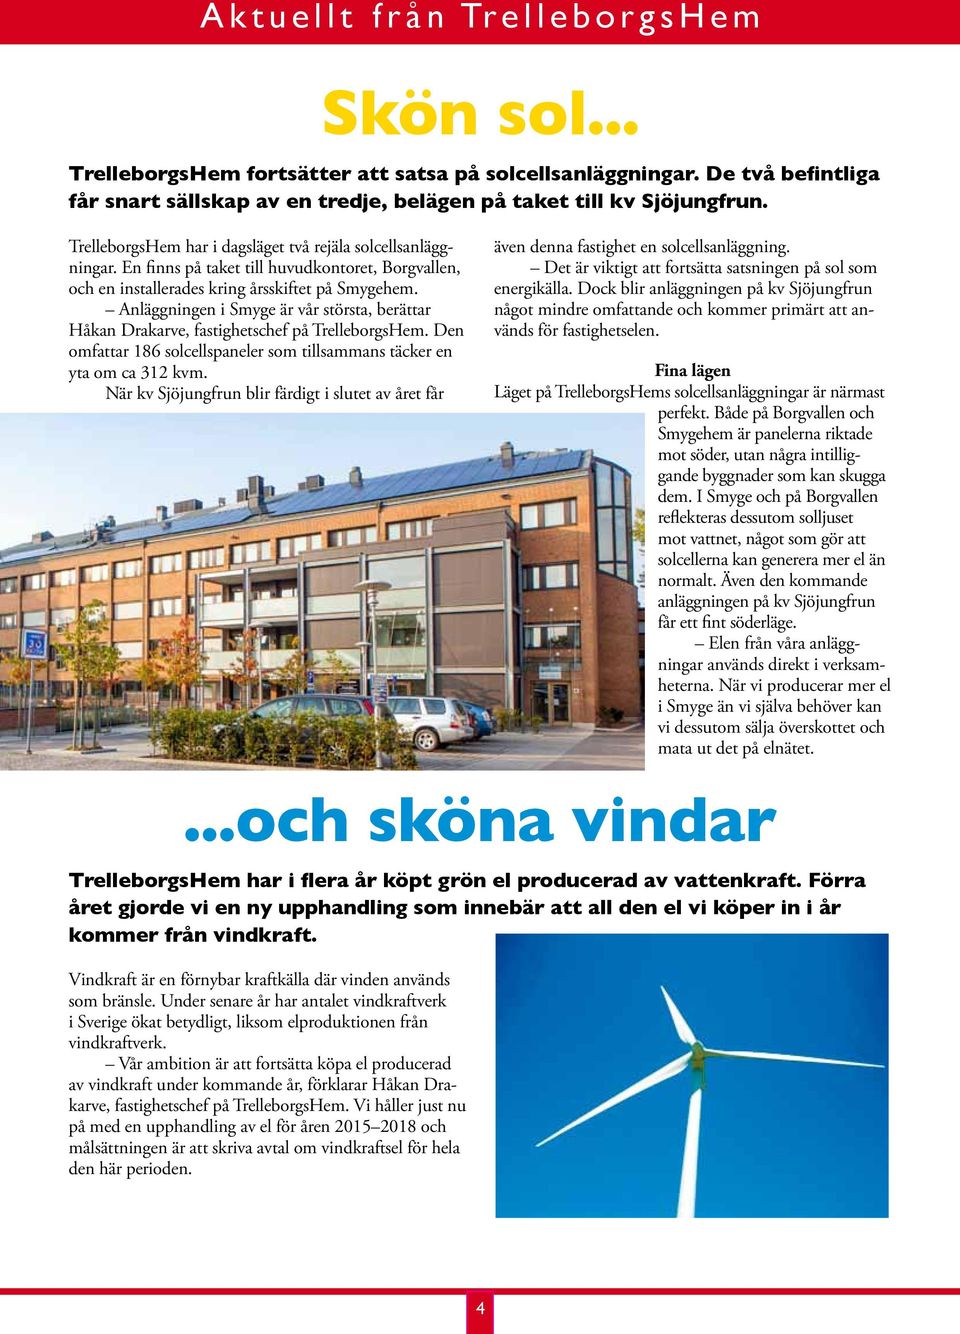 Anläggningen i Smyge är vår största, berättar Håkan Drakarve, fastighetschef på TrelleborgsHem. Den omfattar 186 solcellspaneler som tillsammans täcker en yta om ca 312 kvm.